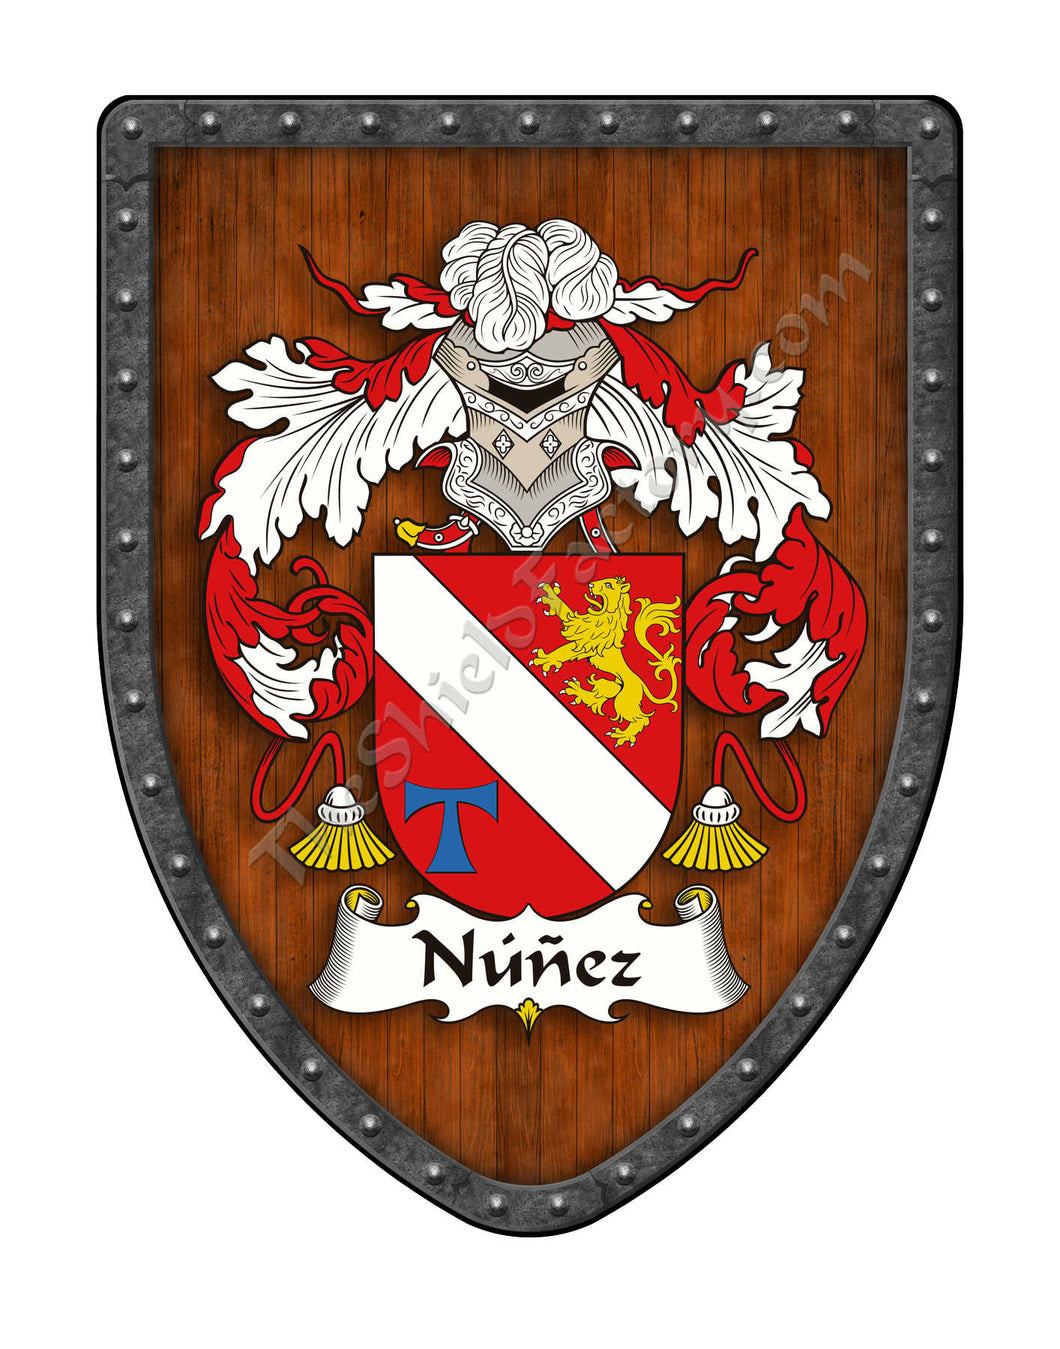 Núñez